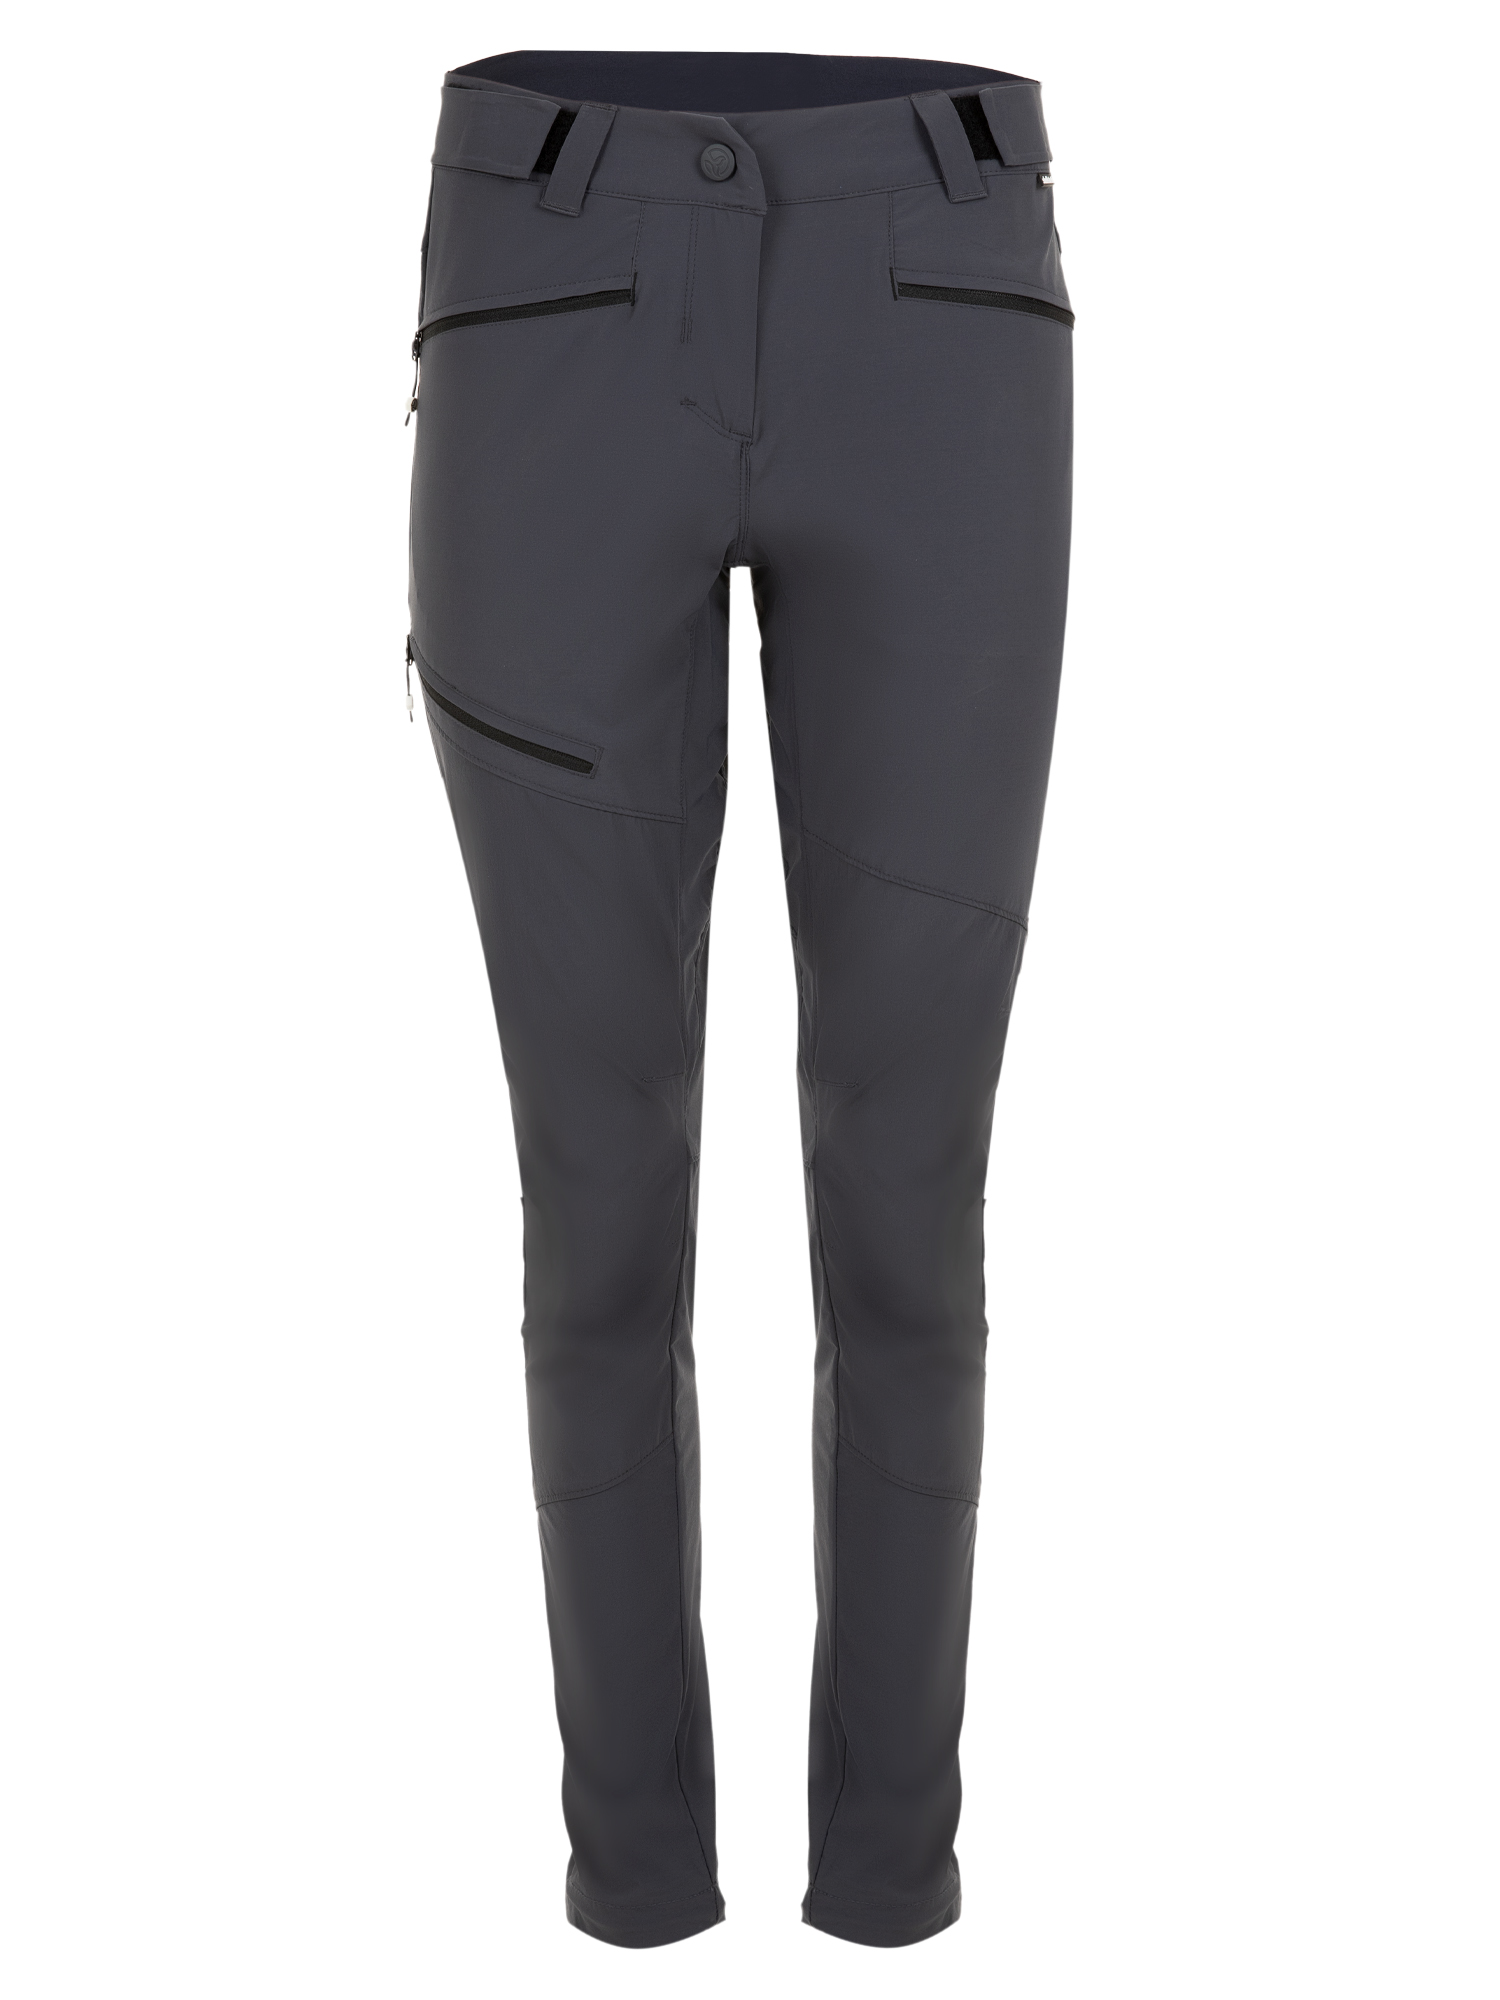 Спортивные брюки женские Ternua Rotar Pt W серые S